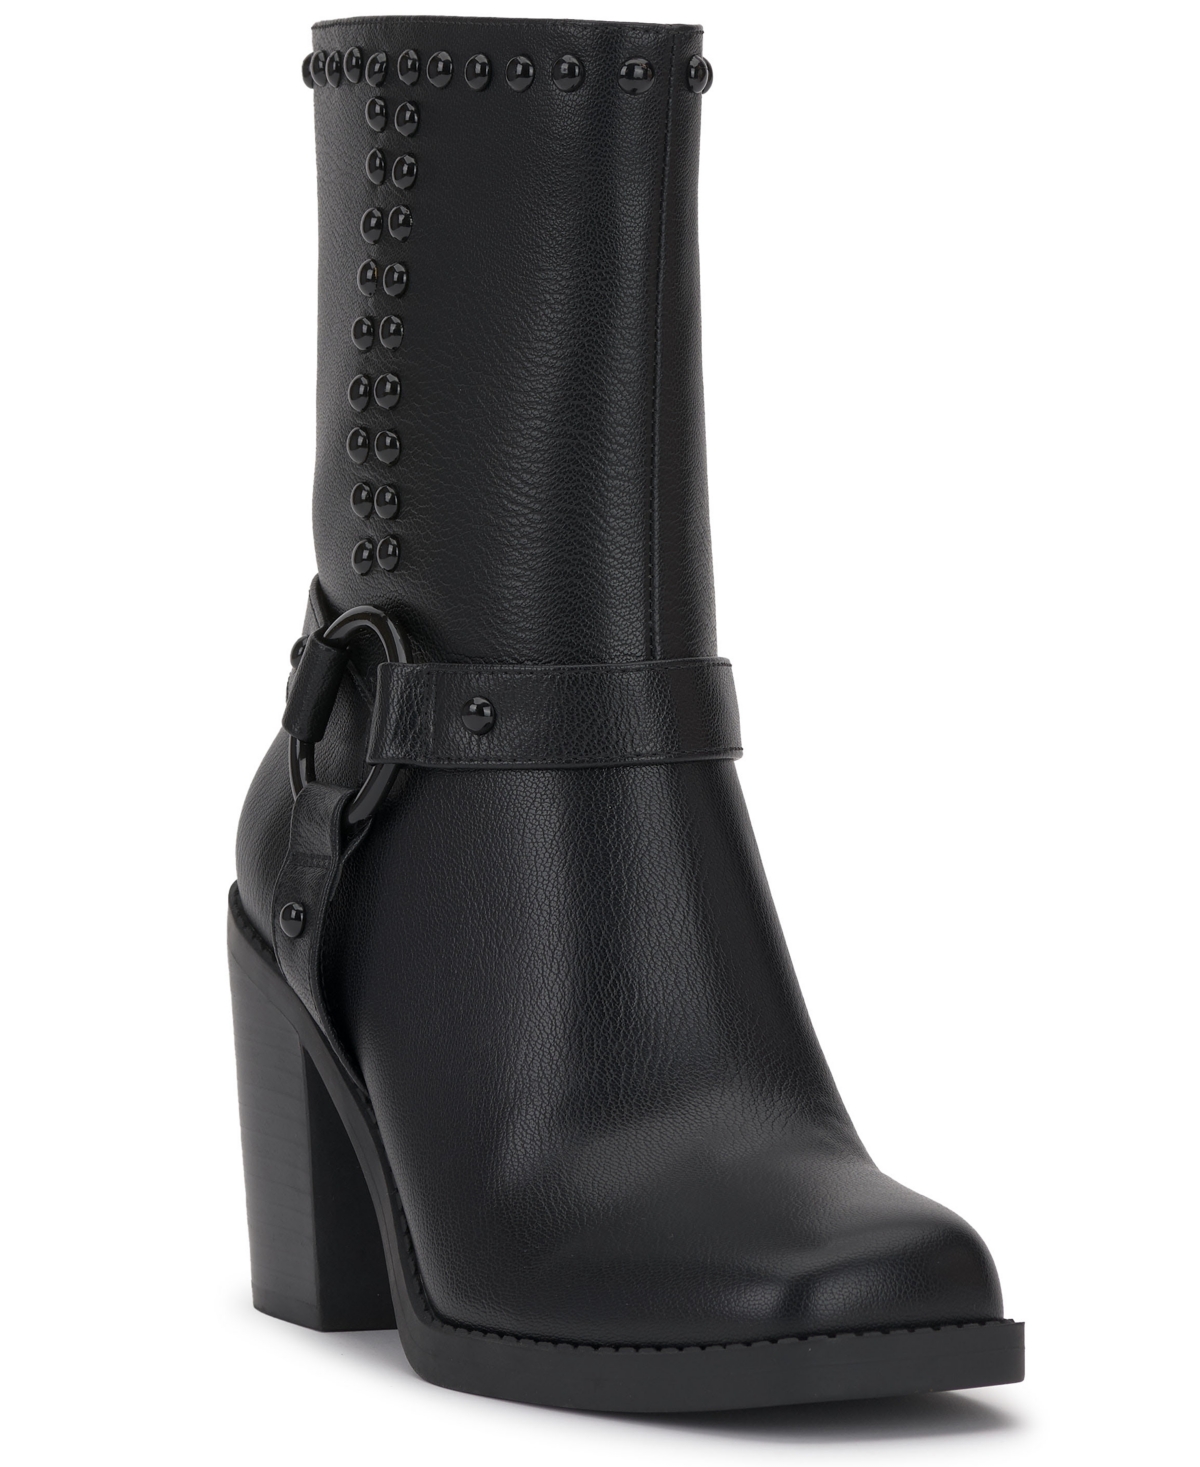 Women's Bernique Harness Strap Dress Boots - Black/Plaid